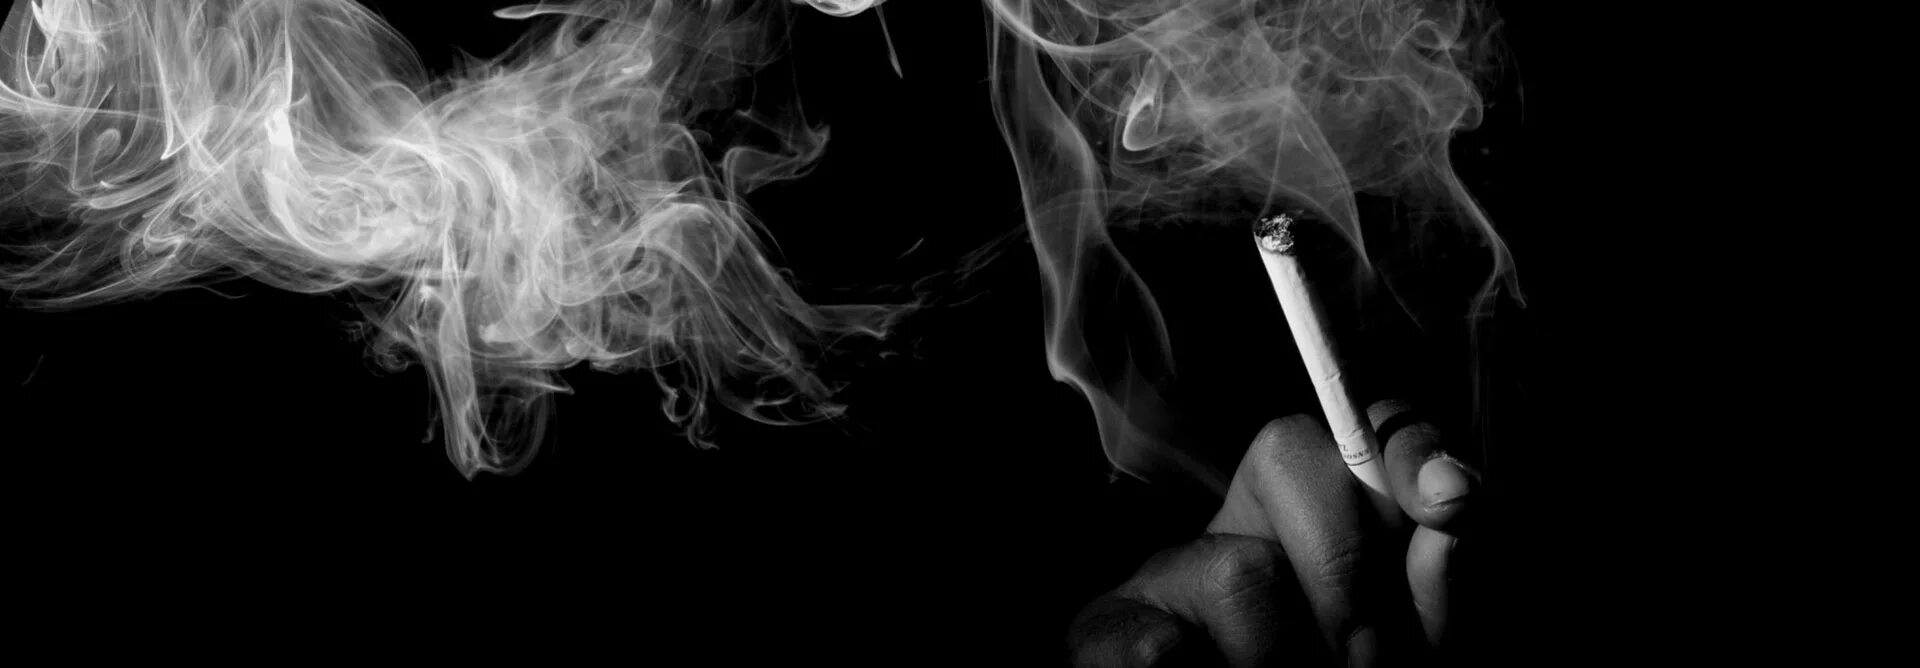 Дым сигарет. Сигаретный дым. Дымок от сигареты. Дымящая сигарета. Вместе с дымом сигарет